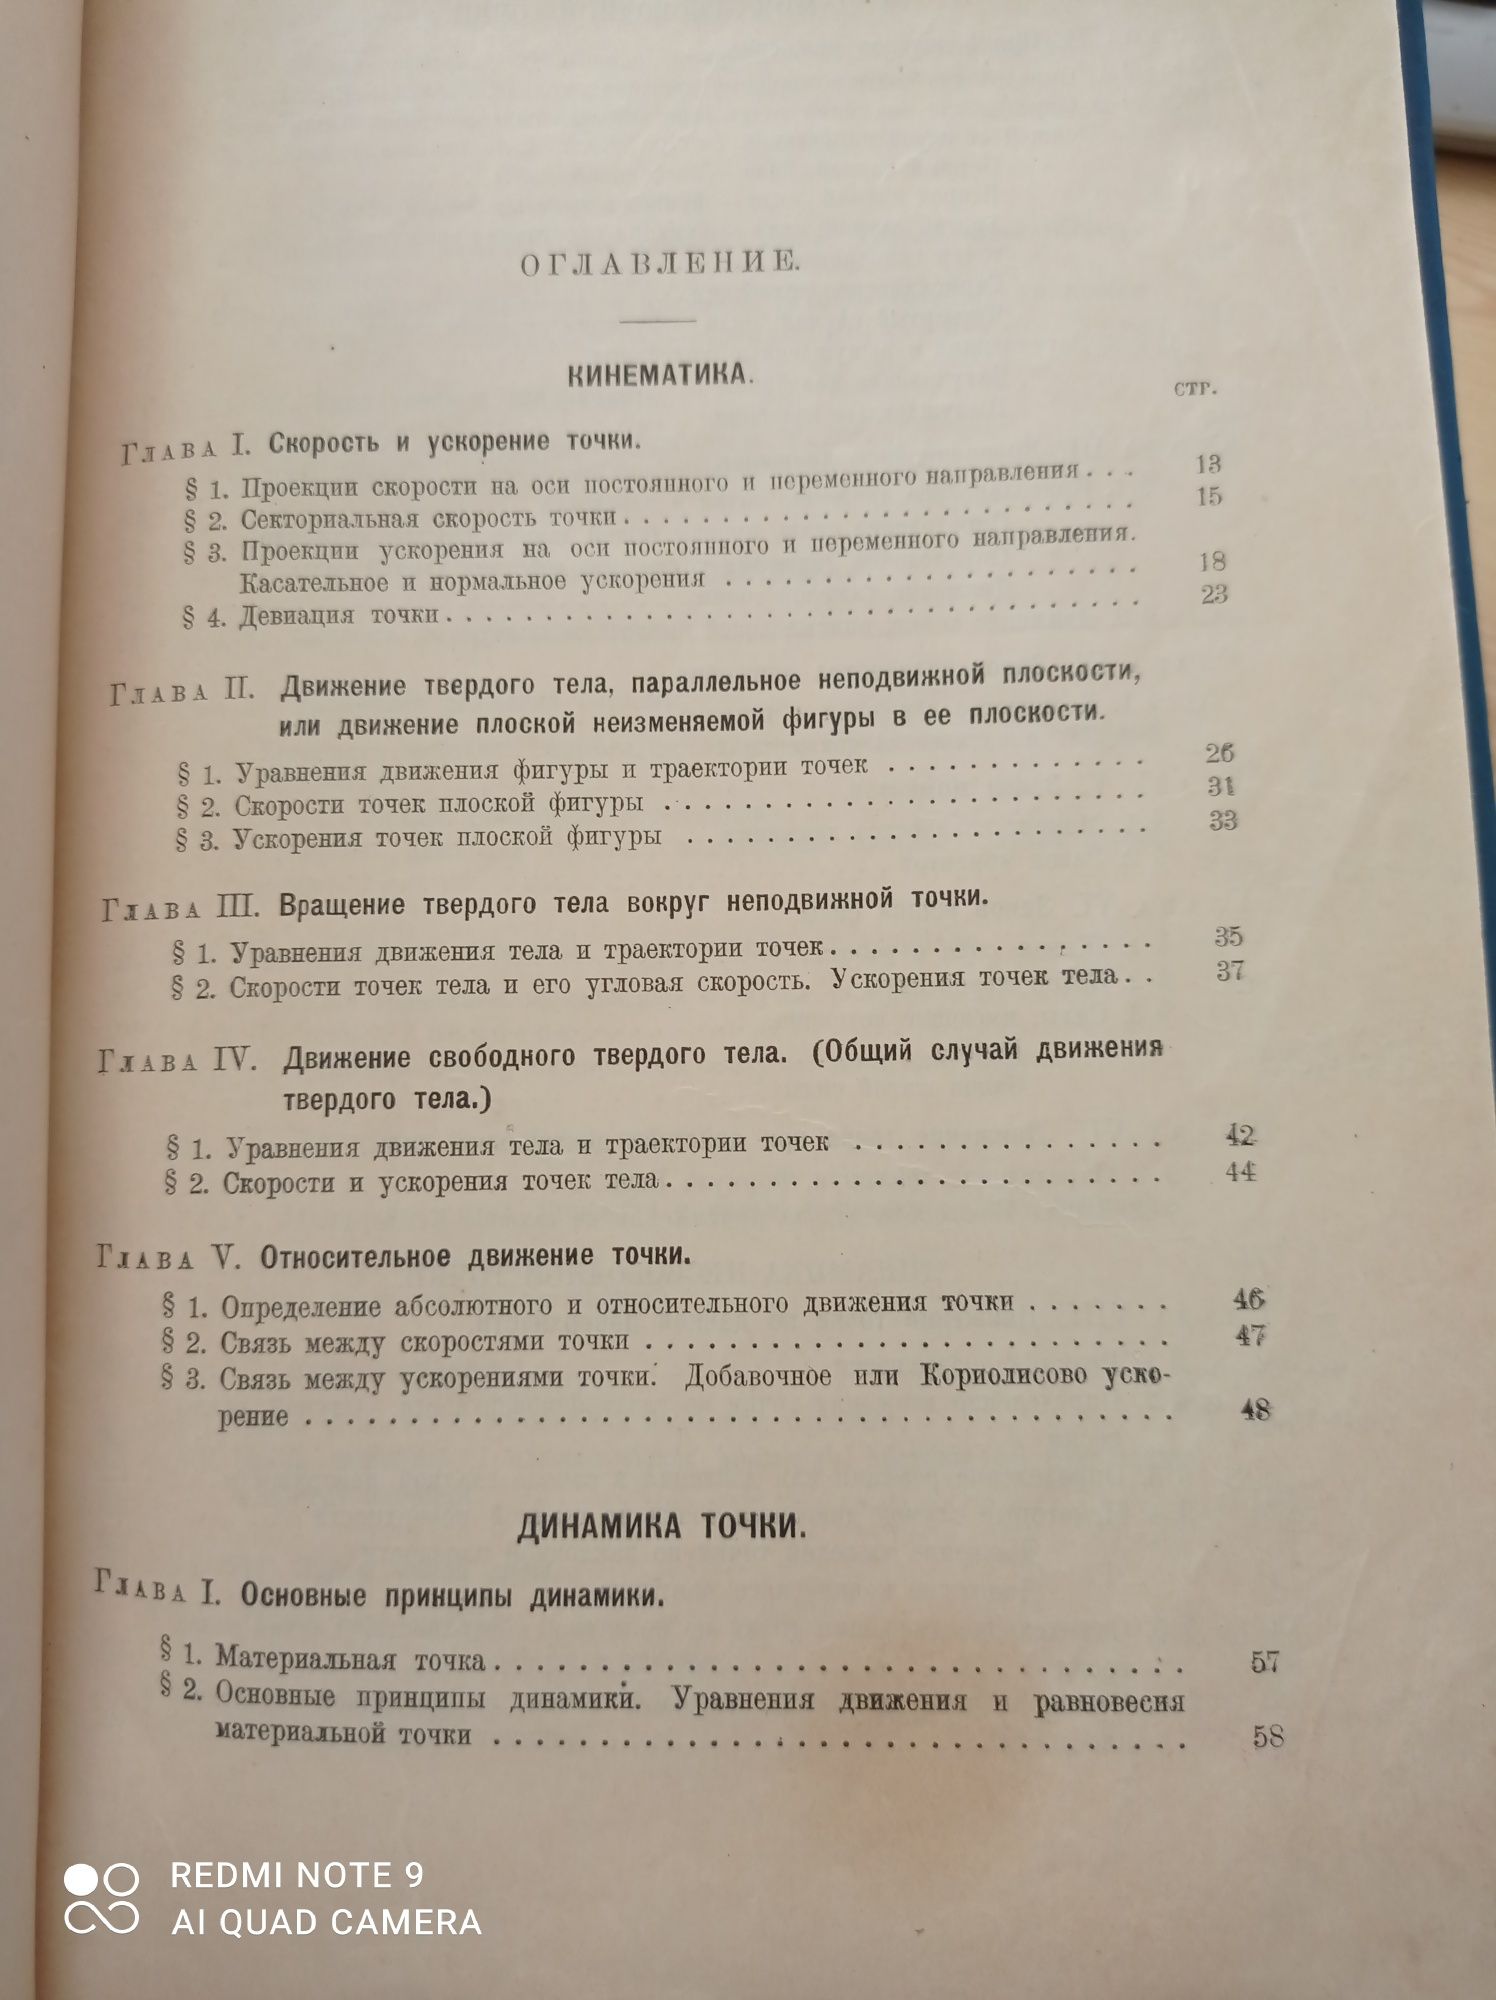 Курс теоретической механики, 1930 год, 2 тома